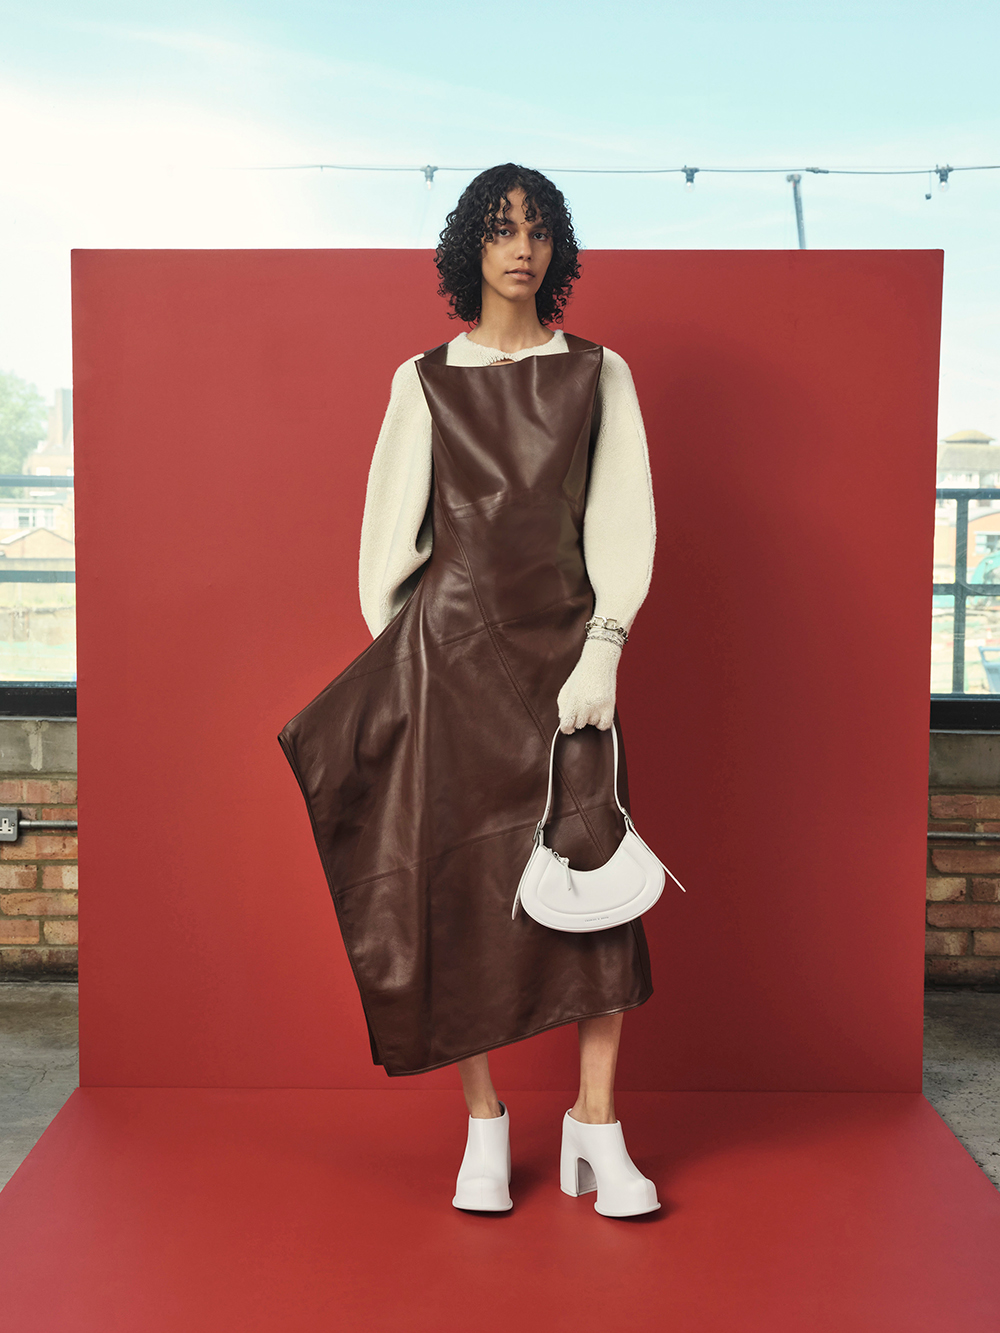 Las mejores ofertas en Zapatos de tacón para mujer rojo Louis Vuitton